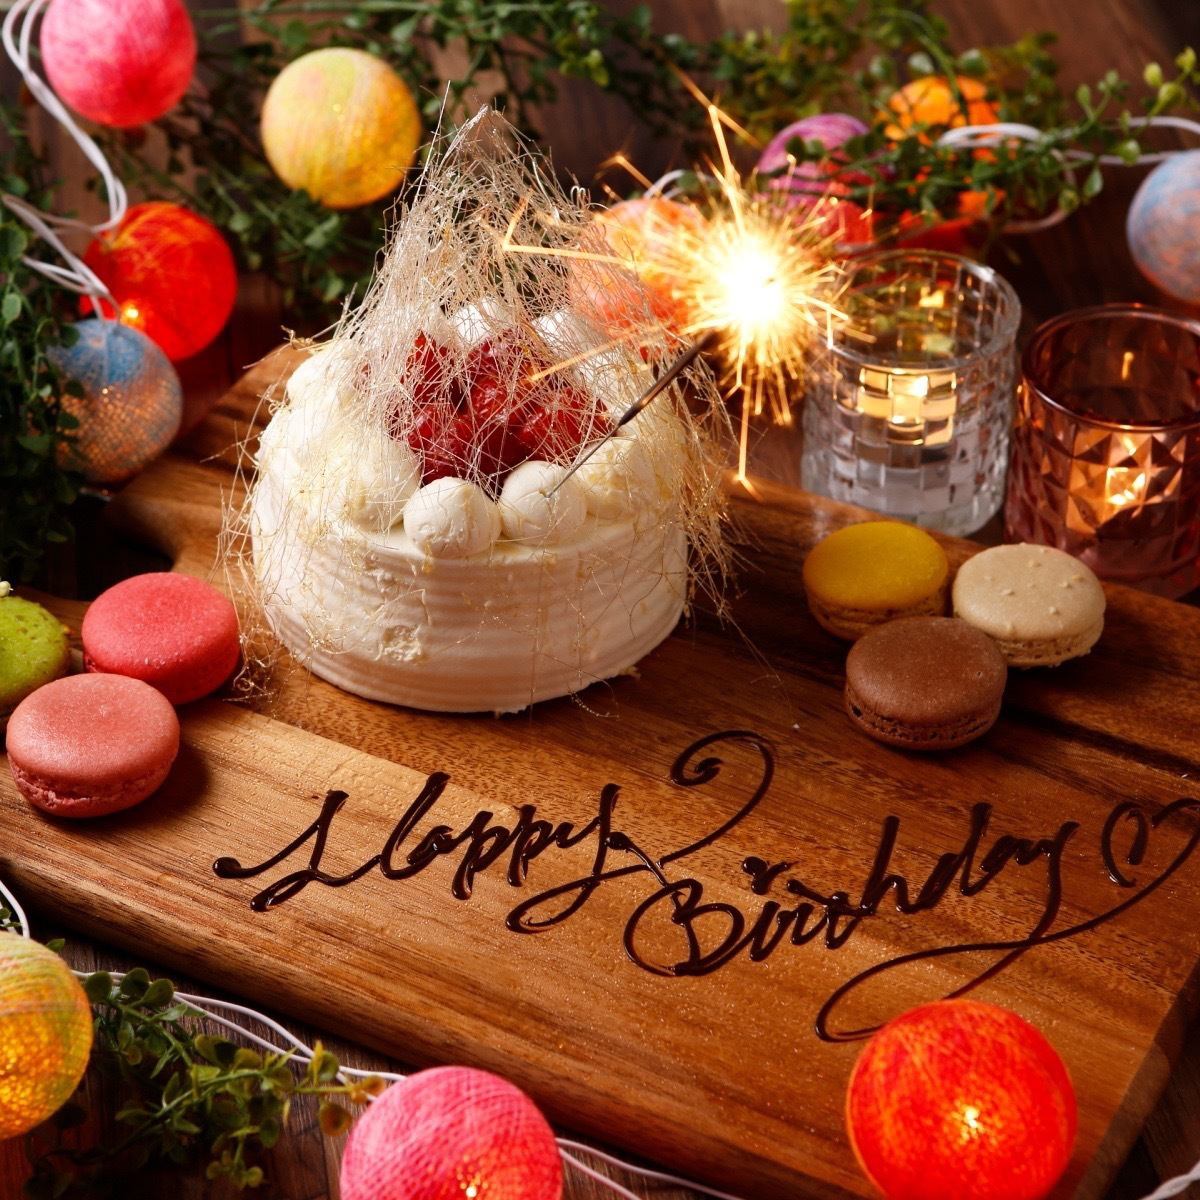 【全席均为包间】人气超高★生日、纪念日有整块蛋糕惊喜★